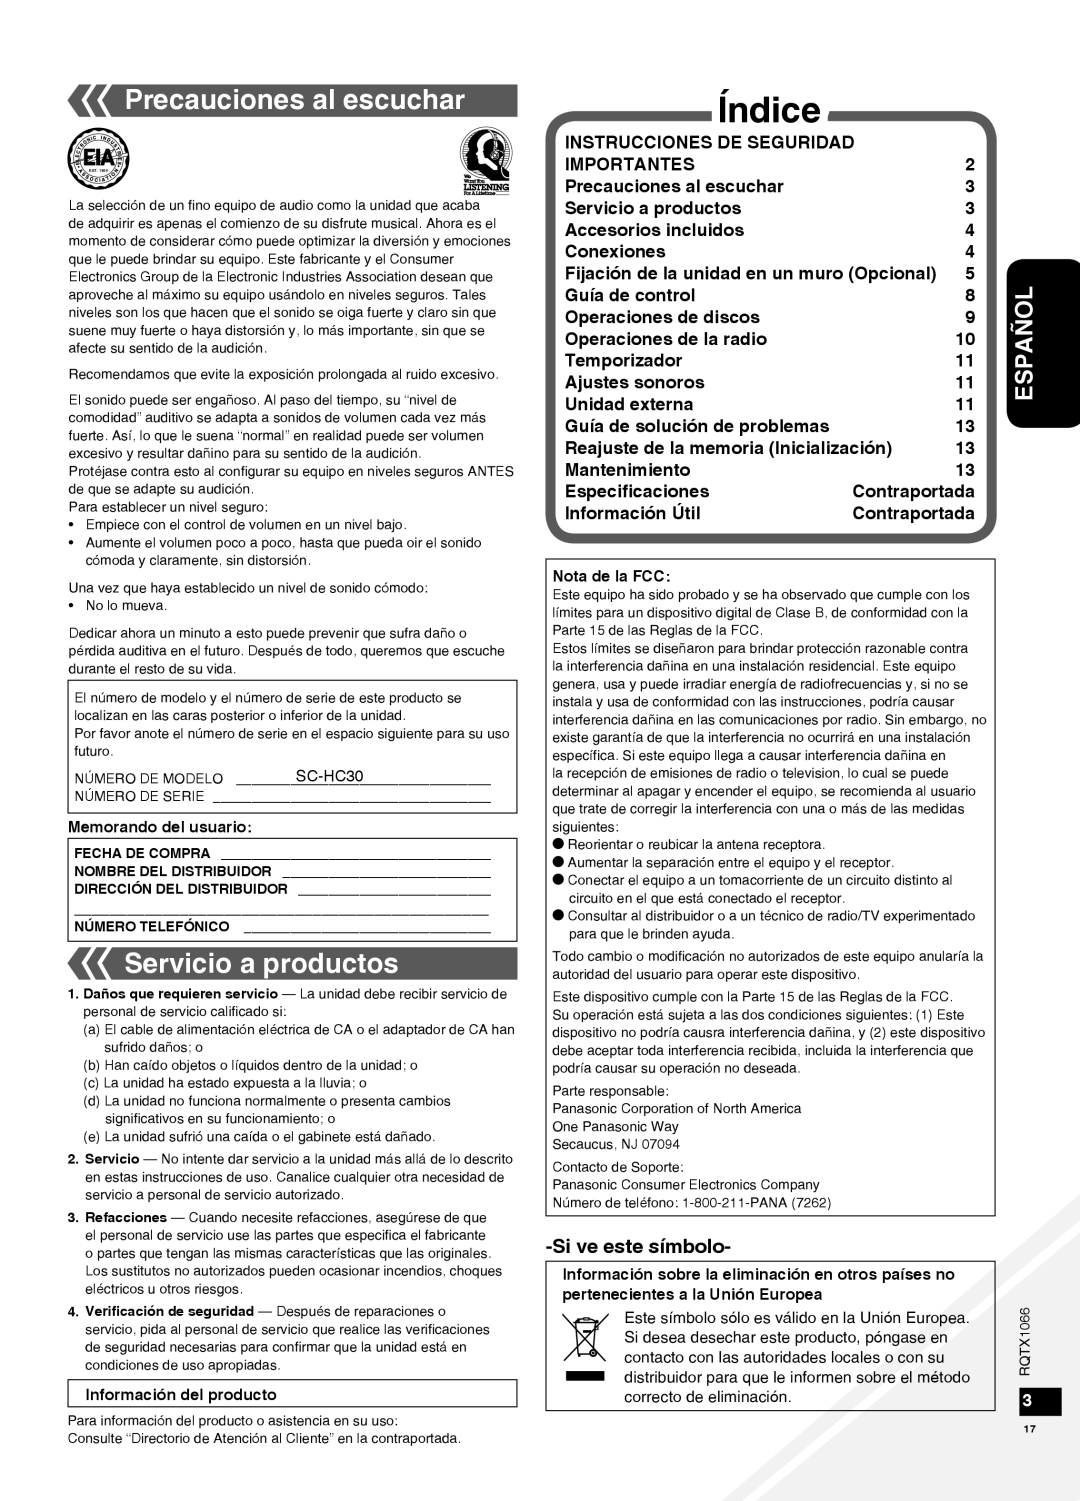 Panasonic SC-HC30 Índice, Precauciones al escuchar, Servicio a productos, Español, Sive este símbolo, Importantes 